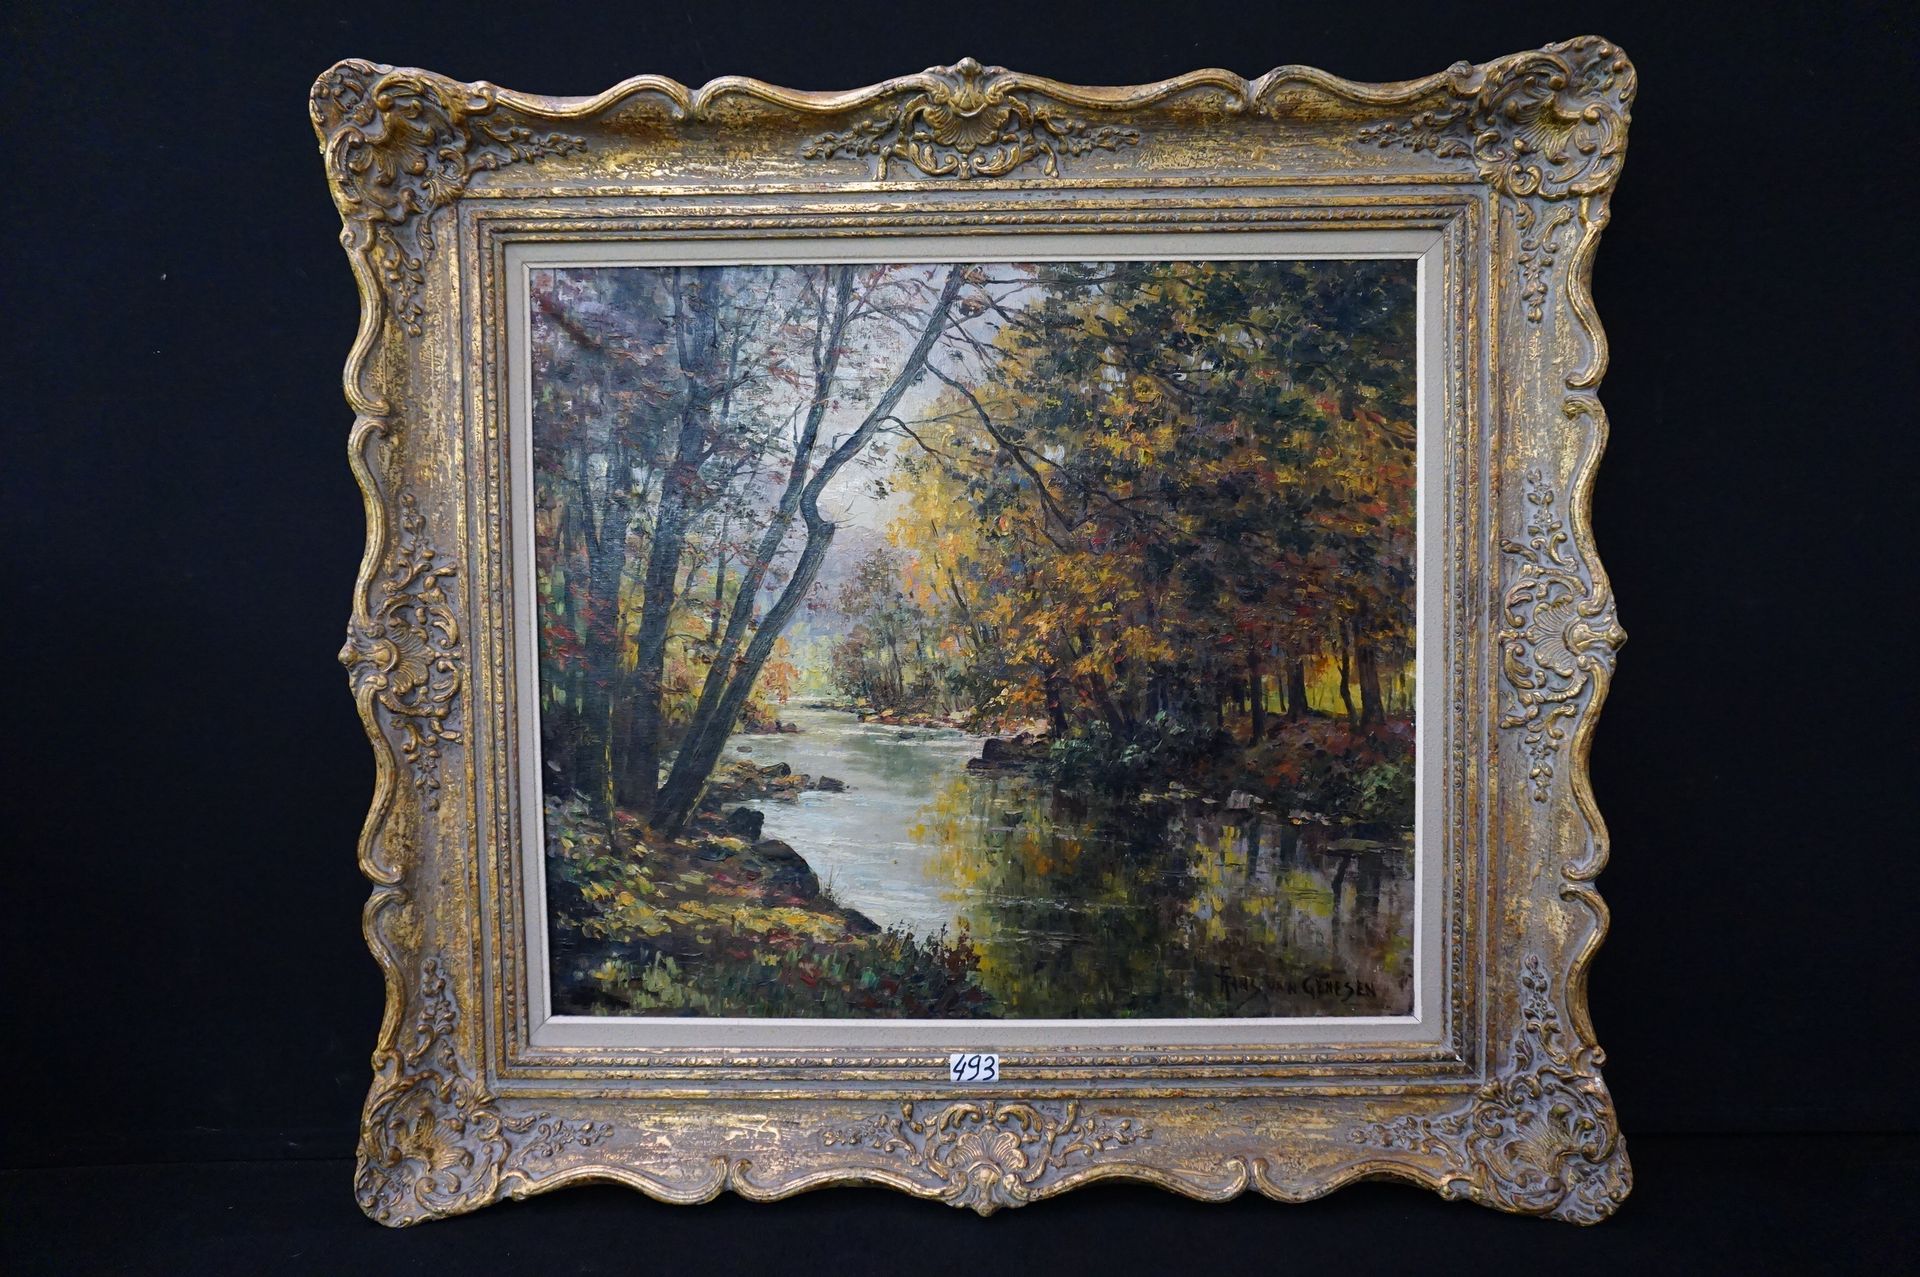 FRANS VAN GENESEN (1887 - 1945) "Vista del bosque con río en otoño" - Óleo sobre&hellip;